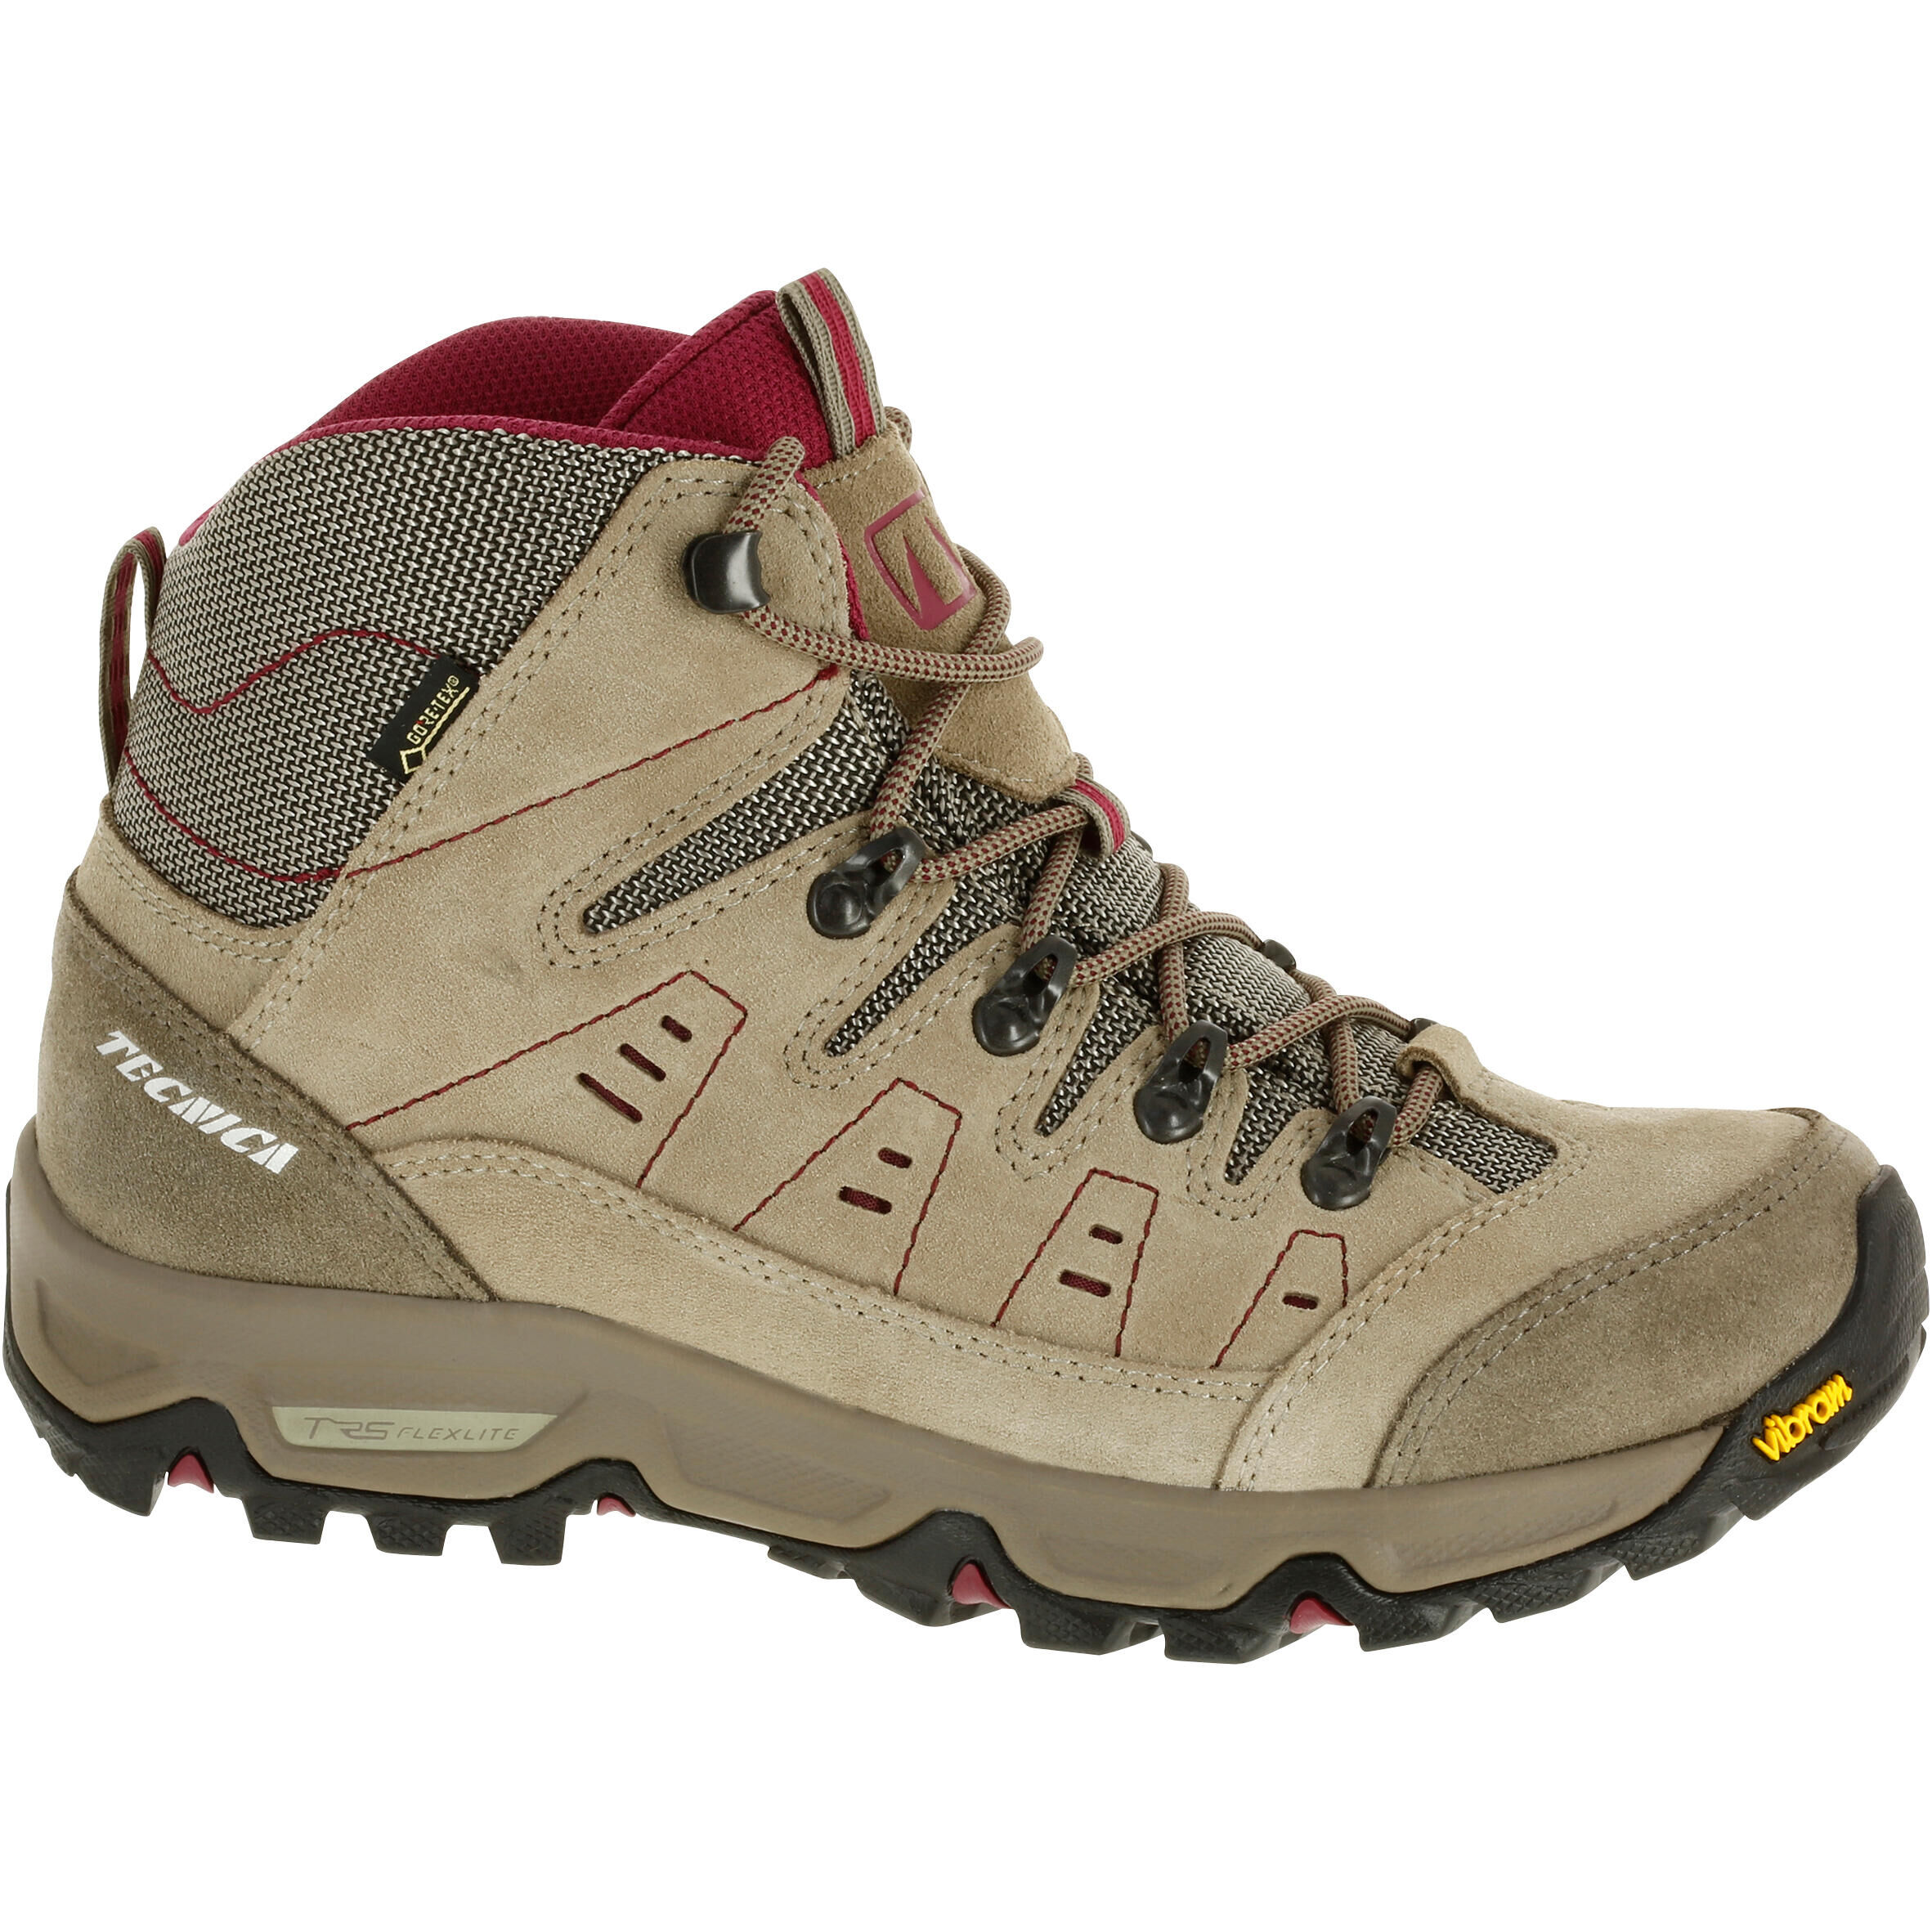 TECNICA Waterproof Trekking Shoes - GORETEX - VIBRAM-TECNICA STARCROSS - W Beige